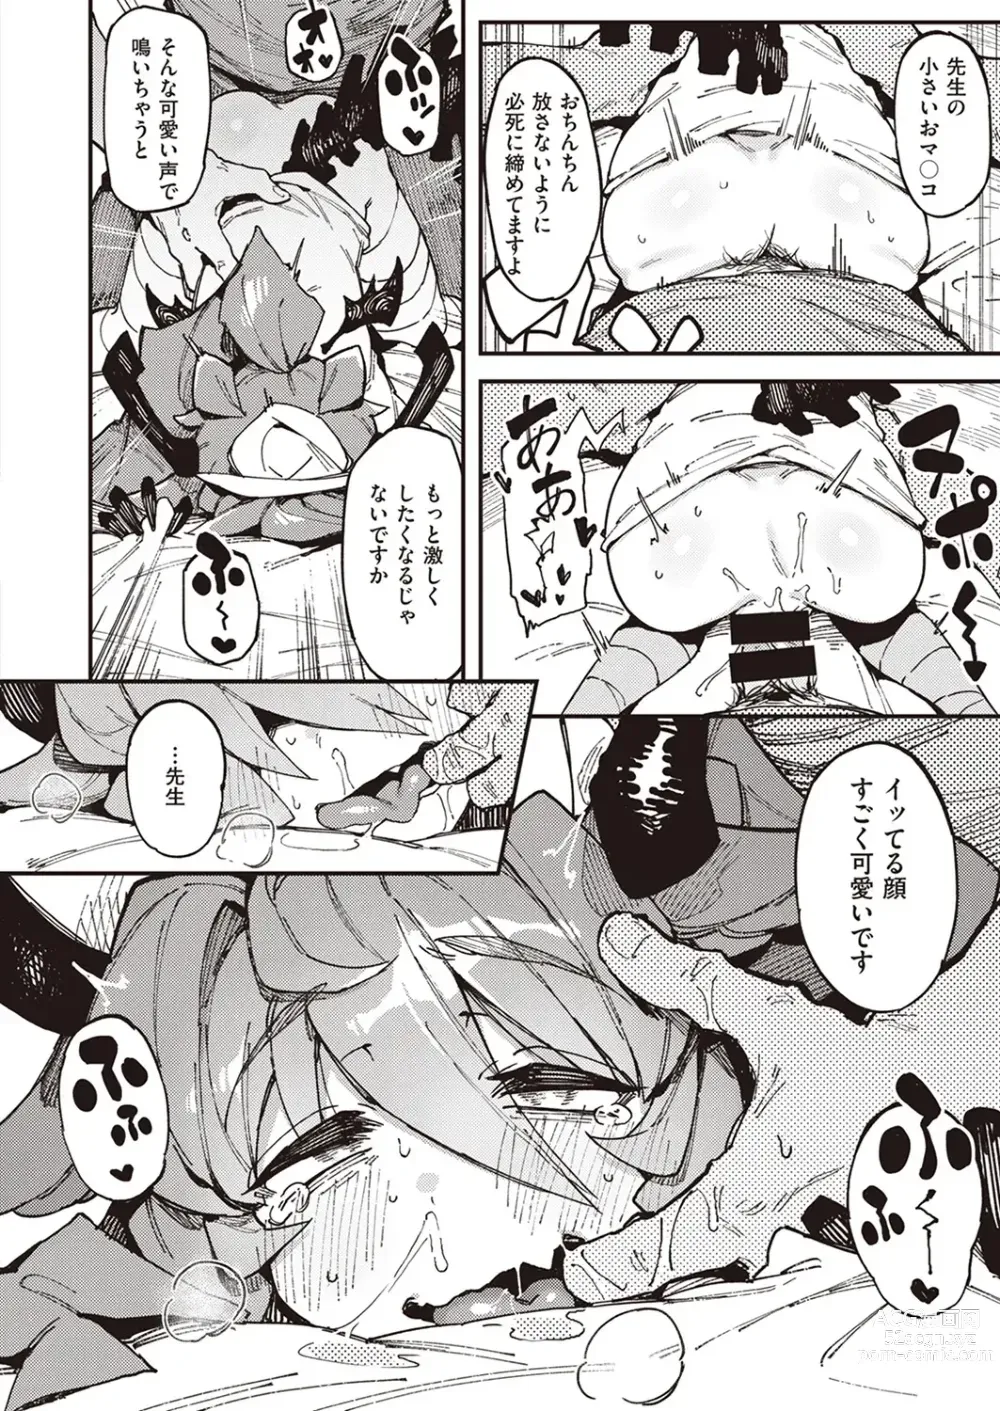 Page 47 of manga Blutig Karte